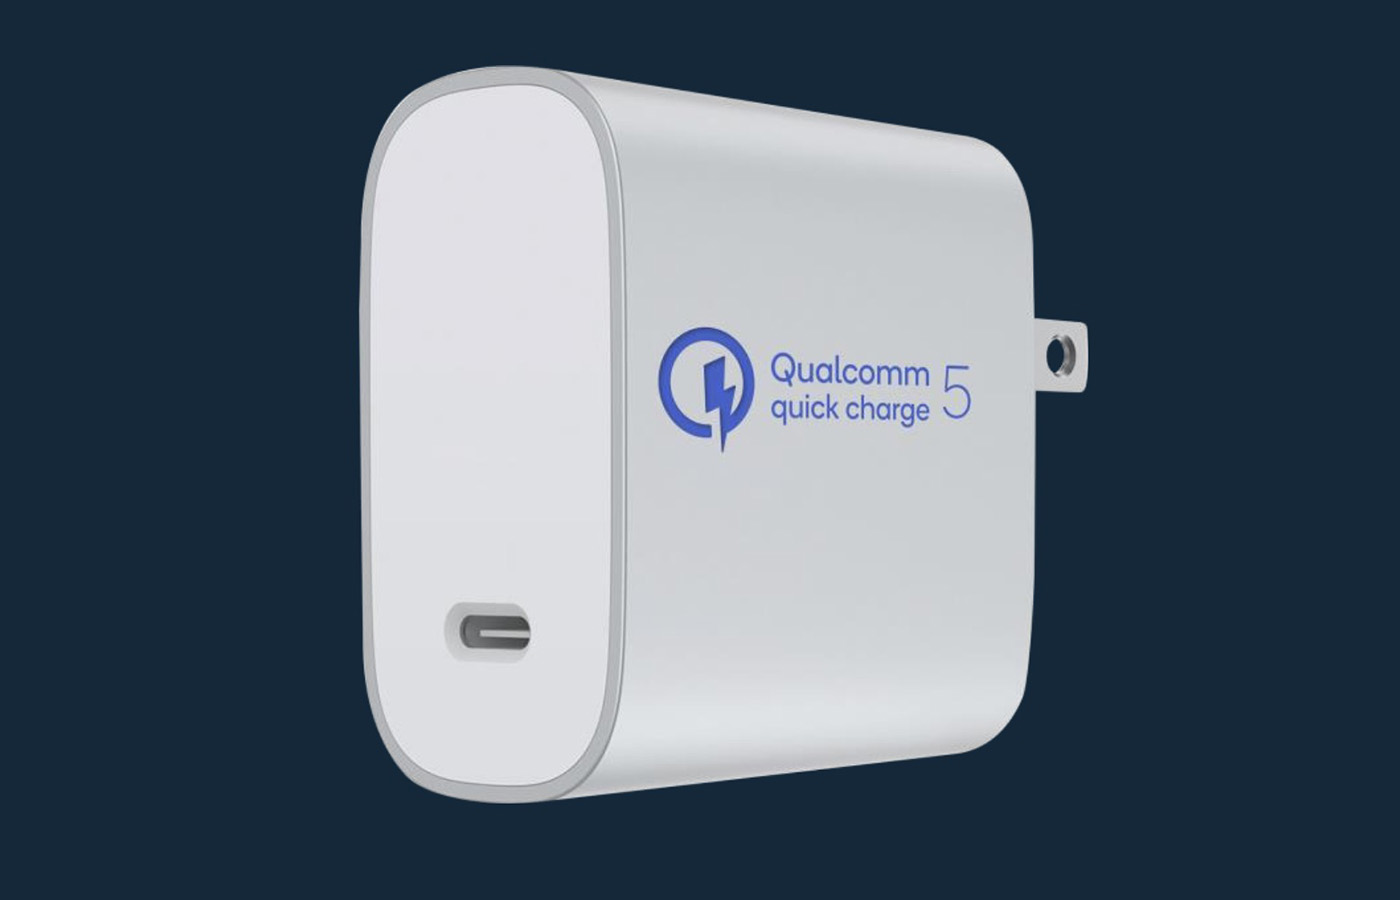  Qualcomm présente le Quick Charge 5, une techno capable d’atteindre les 100W